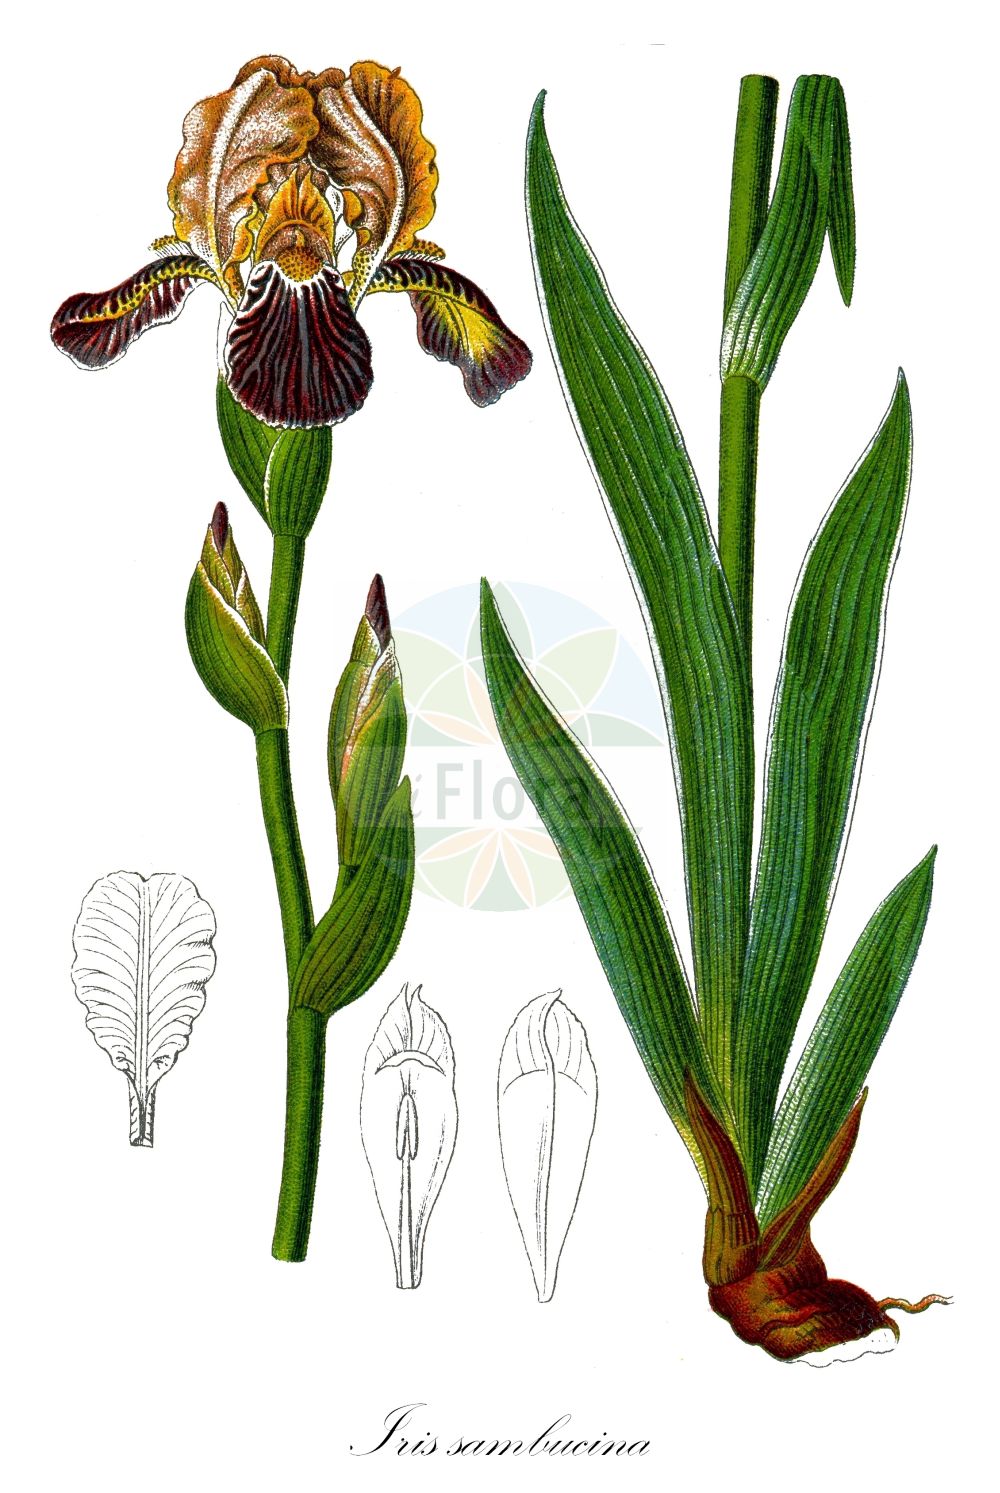 Historische Abbildung von Iris sambucina (Holunder-Schwertlilie - Elder-scented Iris). Das Bild zeigt Blatt, Bluete, Frucht und Same. ---- Historical Drawing of Iris sambucina (Holunder-Schwertlilie - Elder-scented Iris). The image is showing leaf, flower, fruit and seed.(Iris sambucina,Holunder-Schwertlilie,Elder-scented Iris,Iris sambucina,Holunder-Schwertlilie,Schmutziggelbe Schwertlilie,Elder-scented Iris,Iris,Schwertlilie,Iris,Iridaceae,Schwertliliengewächse,Iris family,Blatt,Bluete,Frucht,Same,leaf,flower,fruit,seed,Sturm (1796f))